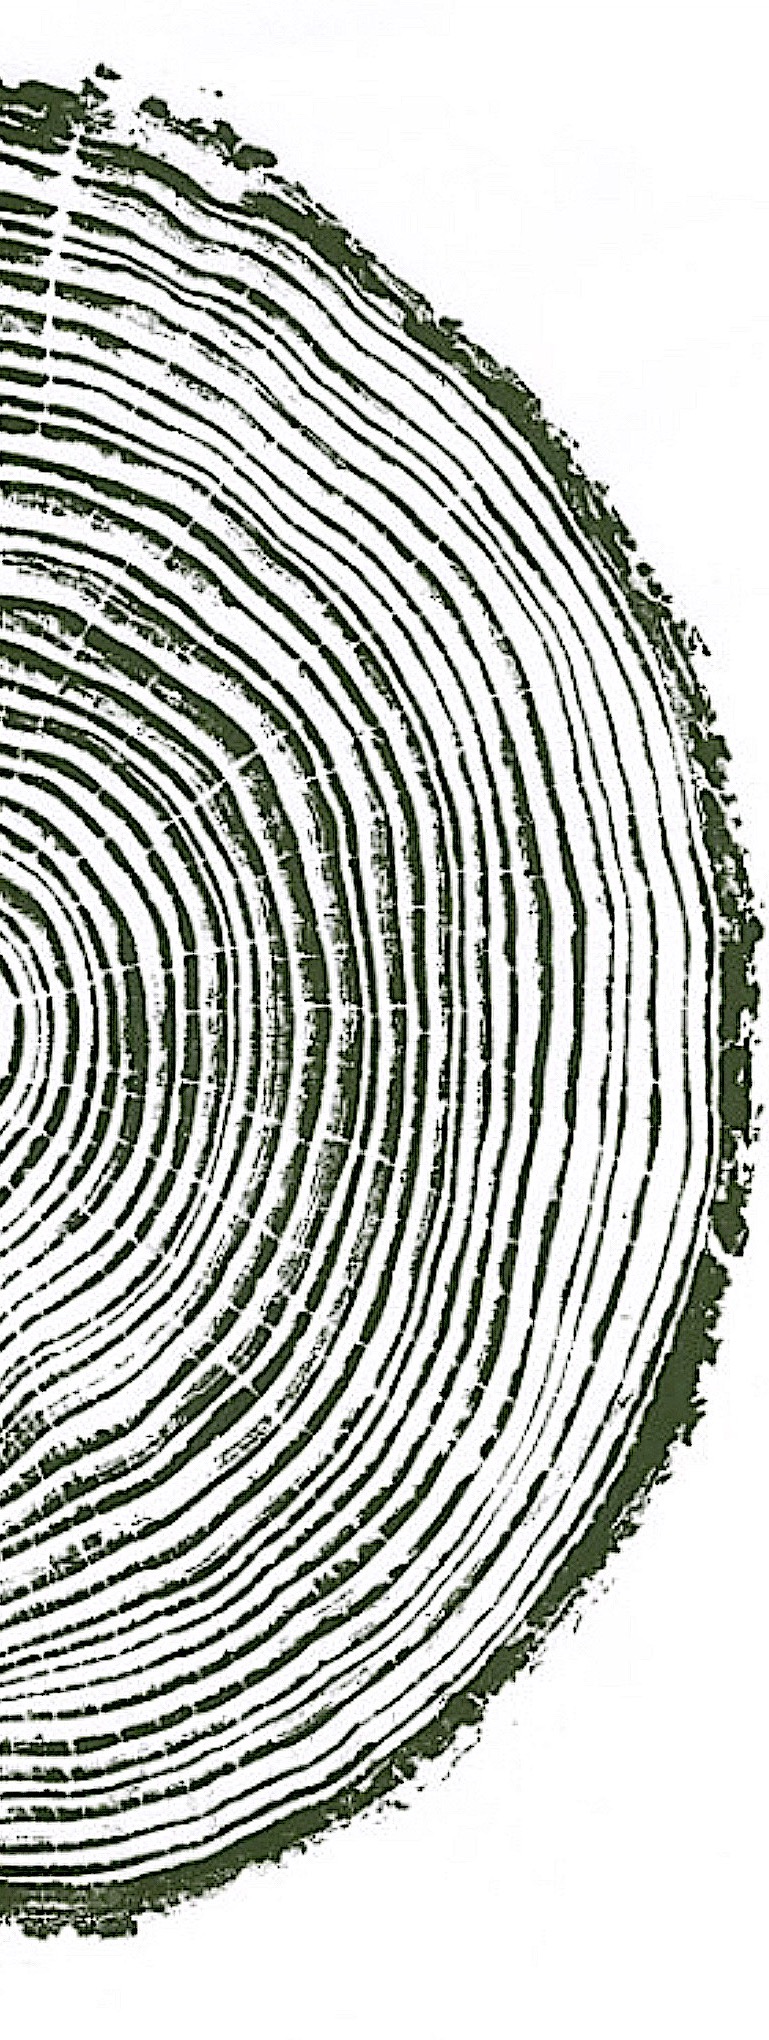 tree ring image